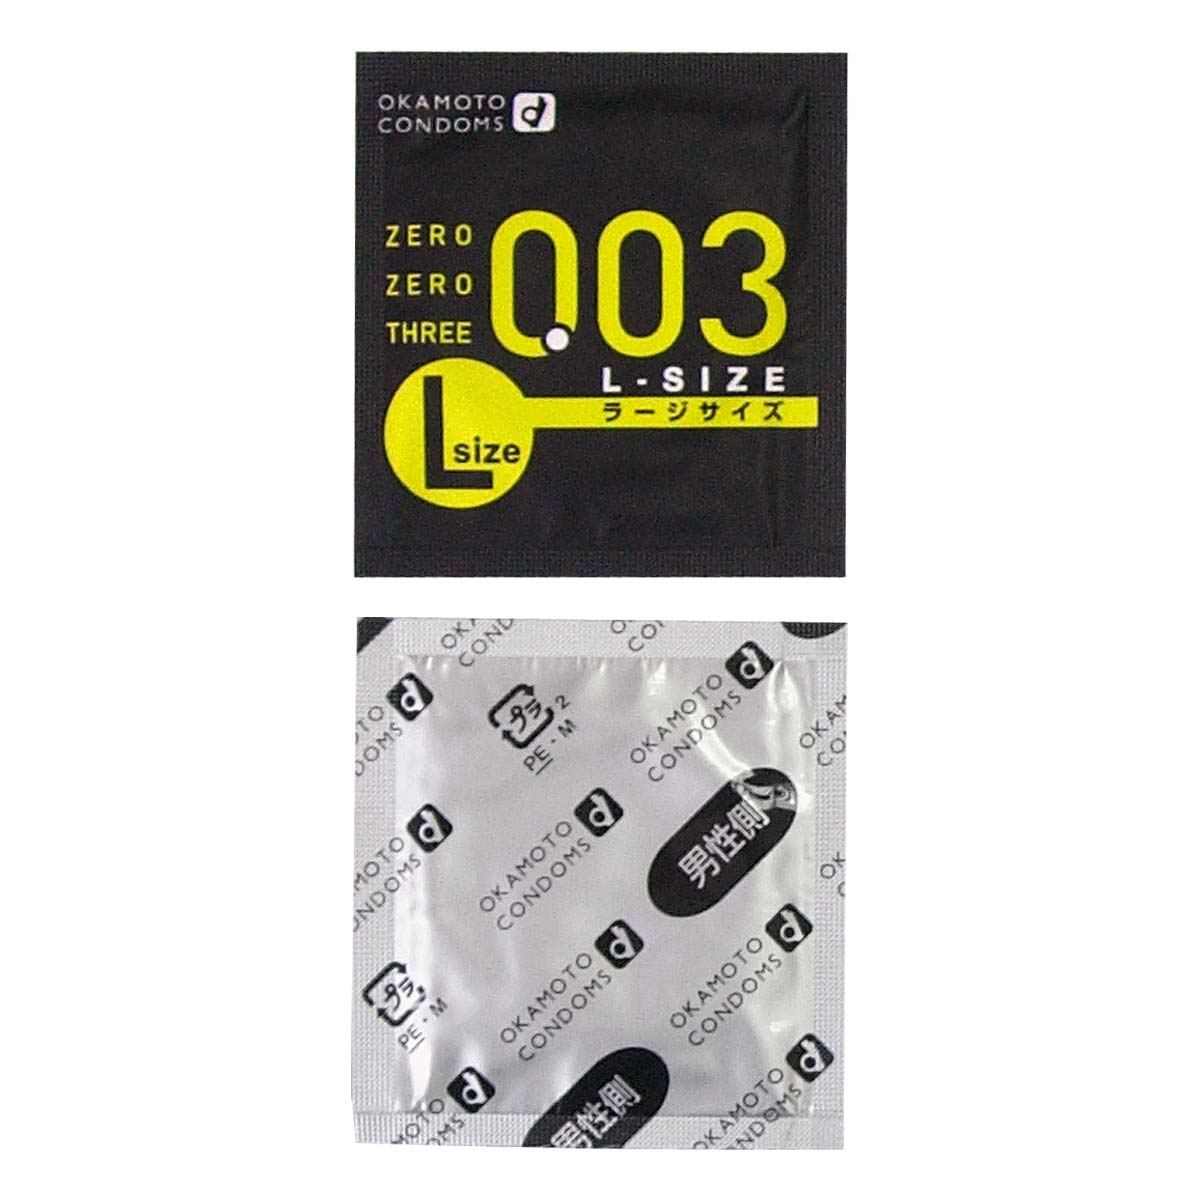 オカモトゼロゼロスリー 0.03 Lサイズ (日本版) 58mm 2 個入 ラテックスコンドーム-p_2